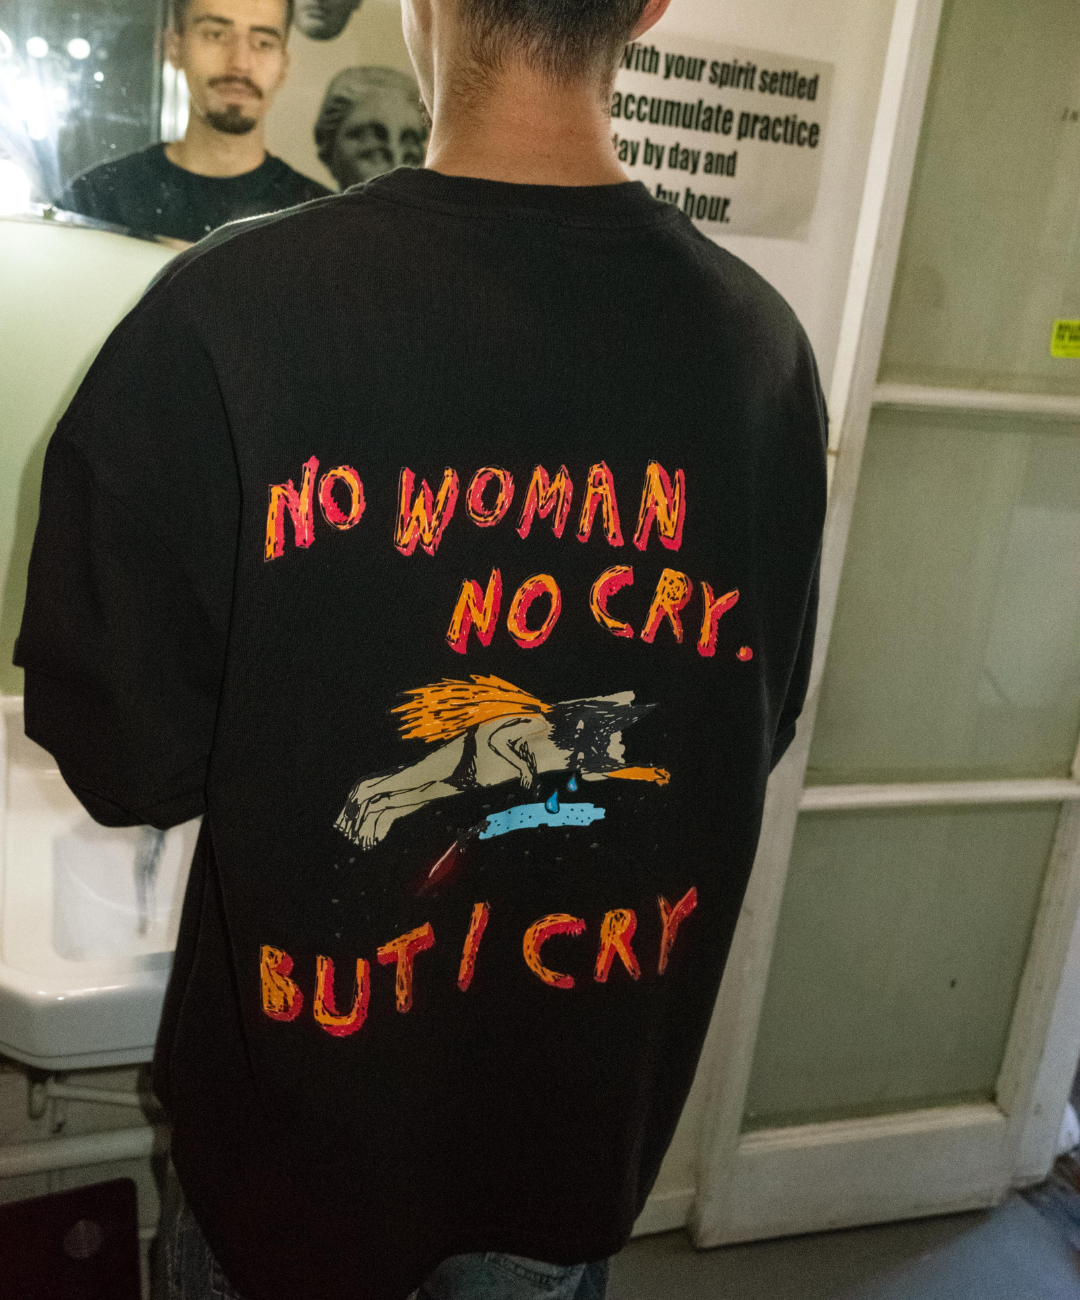 No Woman, No Cry